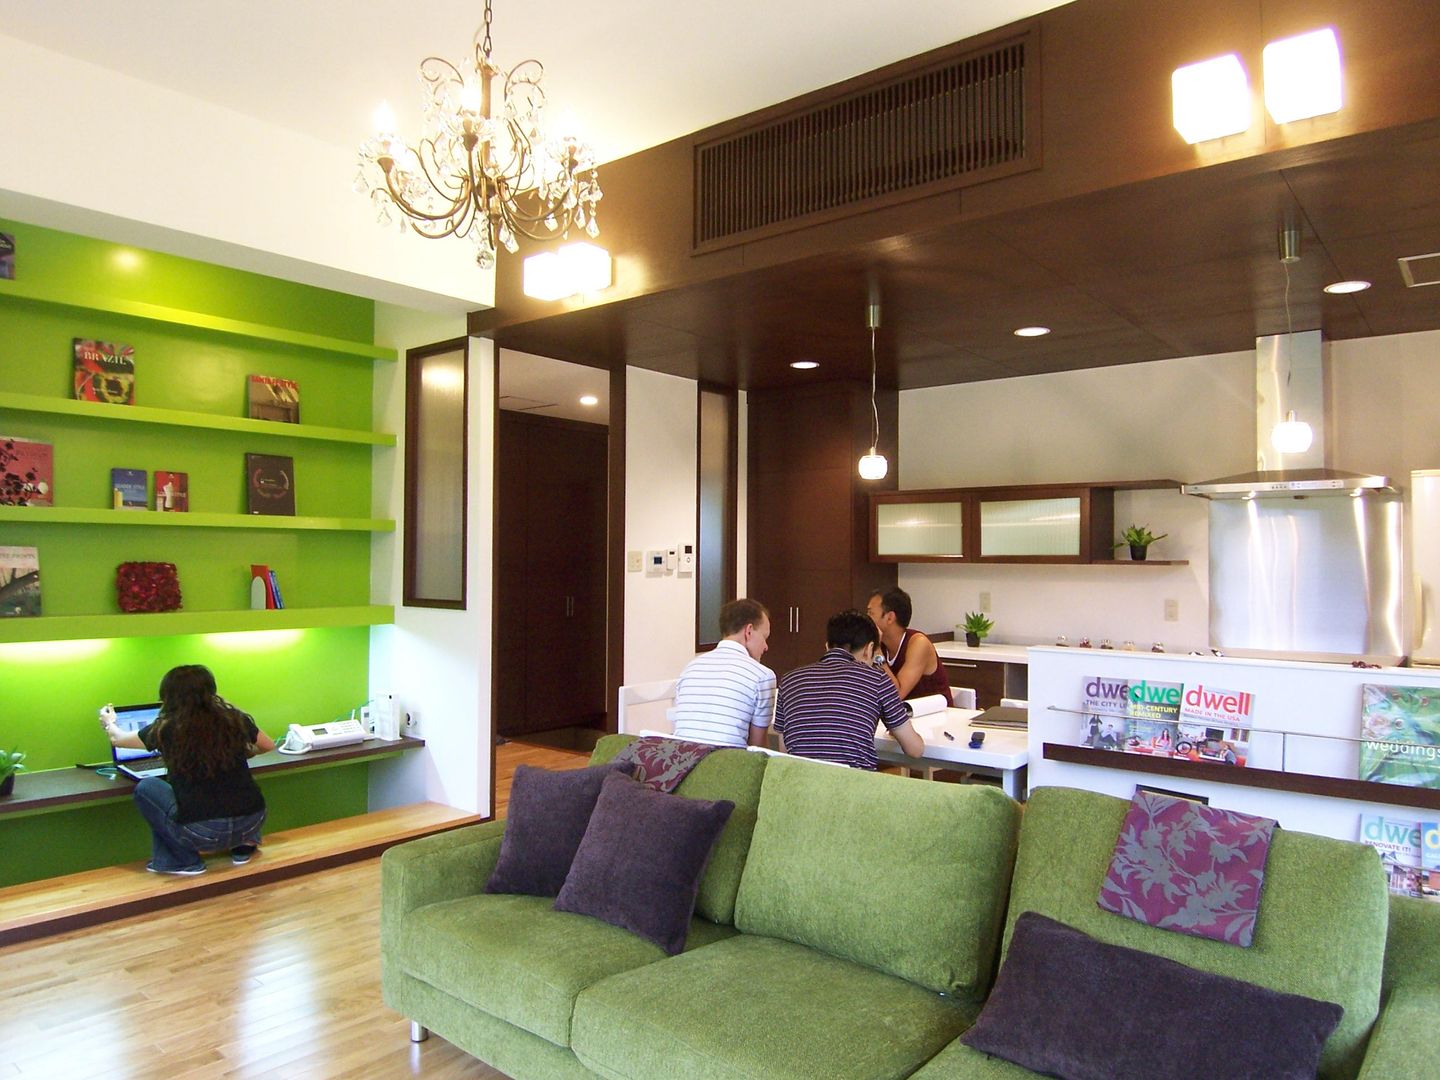 mhouse_改装工事, e.co room e.co room Salones modernos Concreto reforzado Salas y sillones